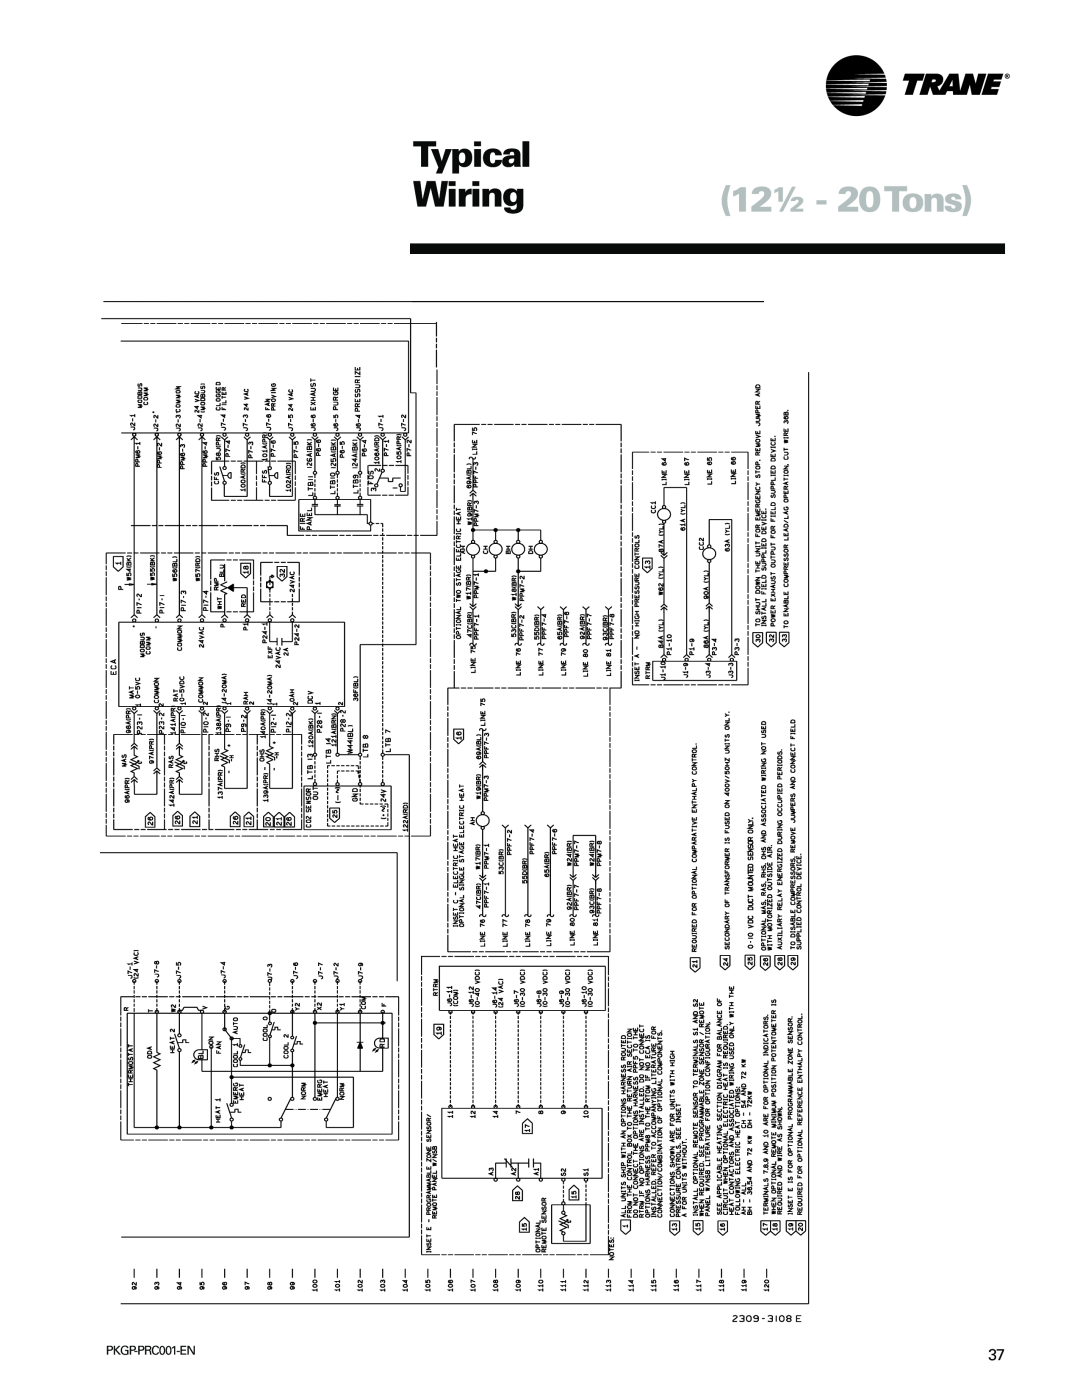 Trane PKGP-PRC001-EN manual Typical, Wiring 12½ - 20Tons 